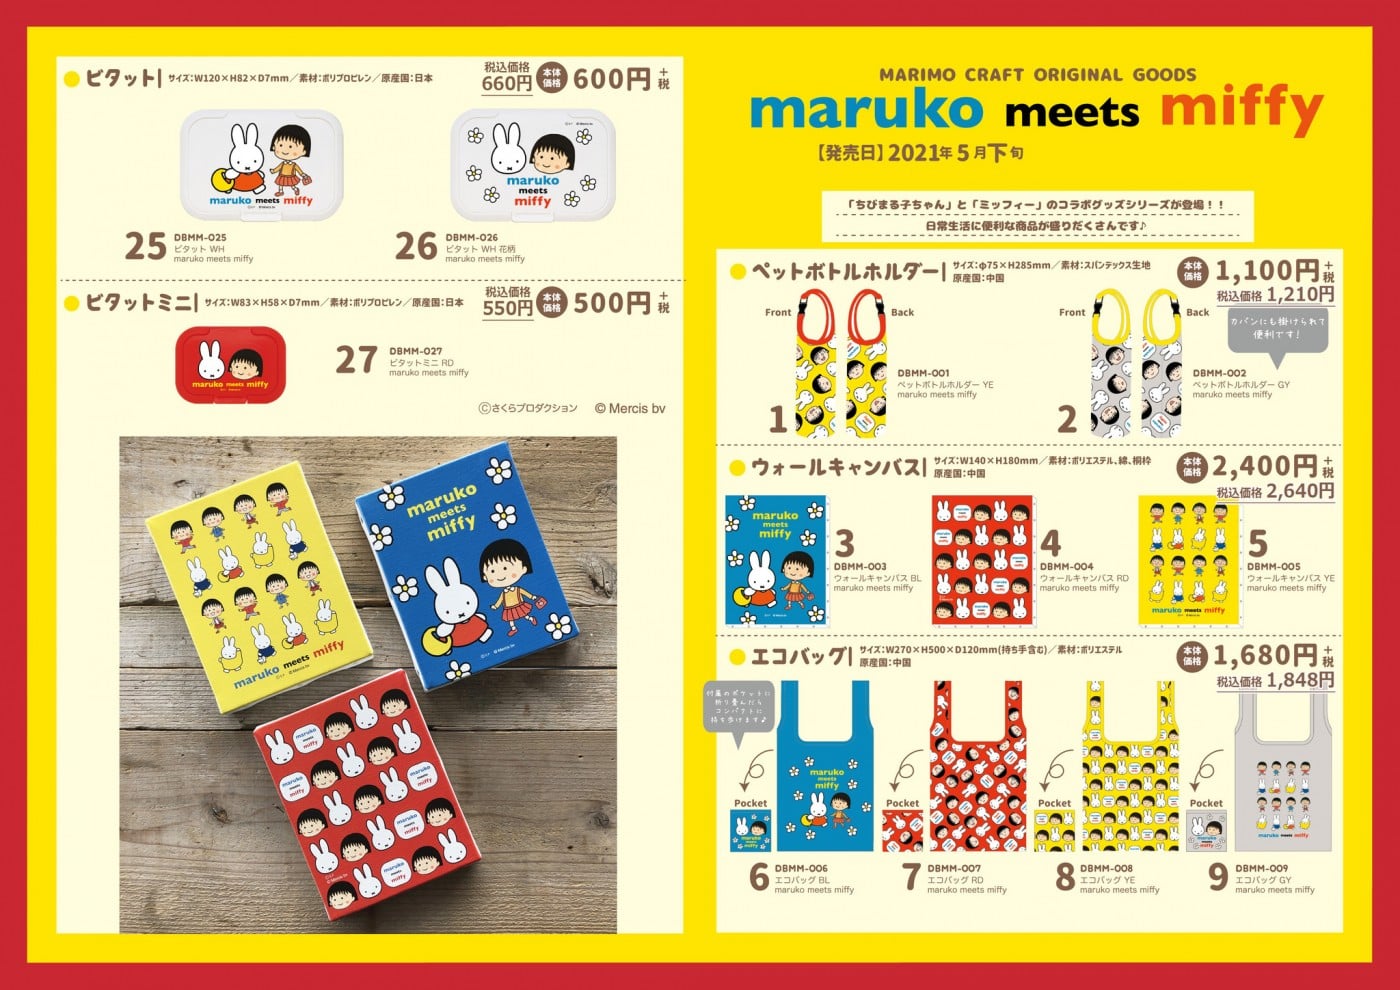 マリモクラフトオリジナルグッズ[ミッフィー]「ちびまる子ちゃん」と「ミッフィー」のコラボレーション「maruko meets miffy」